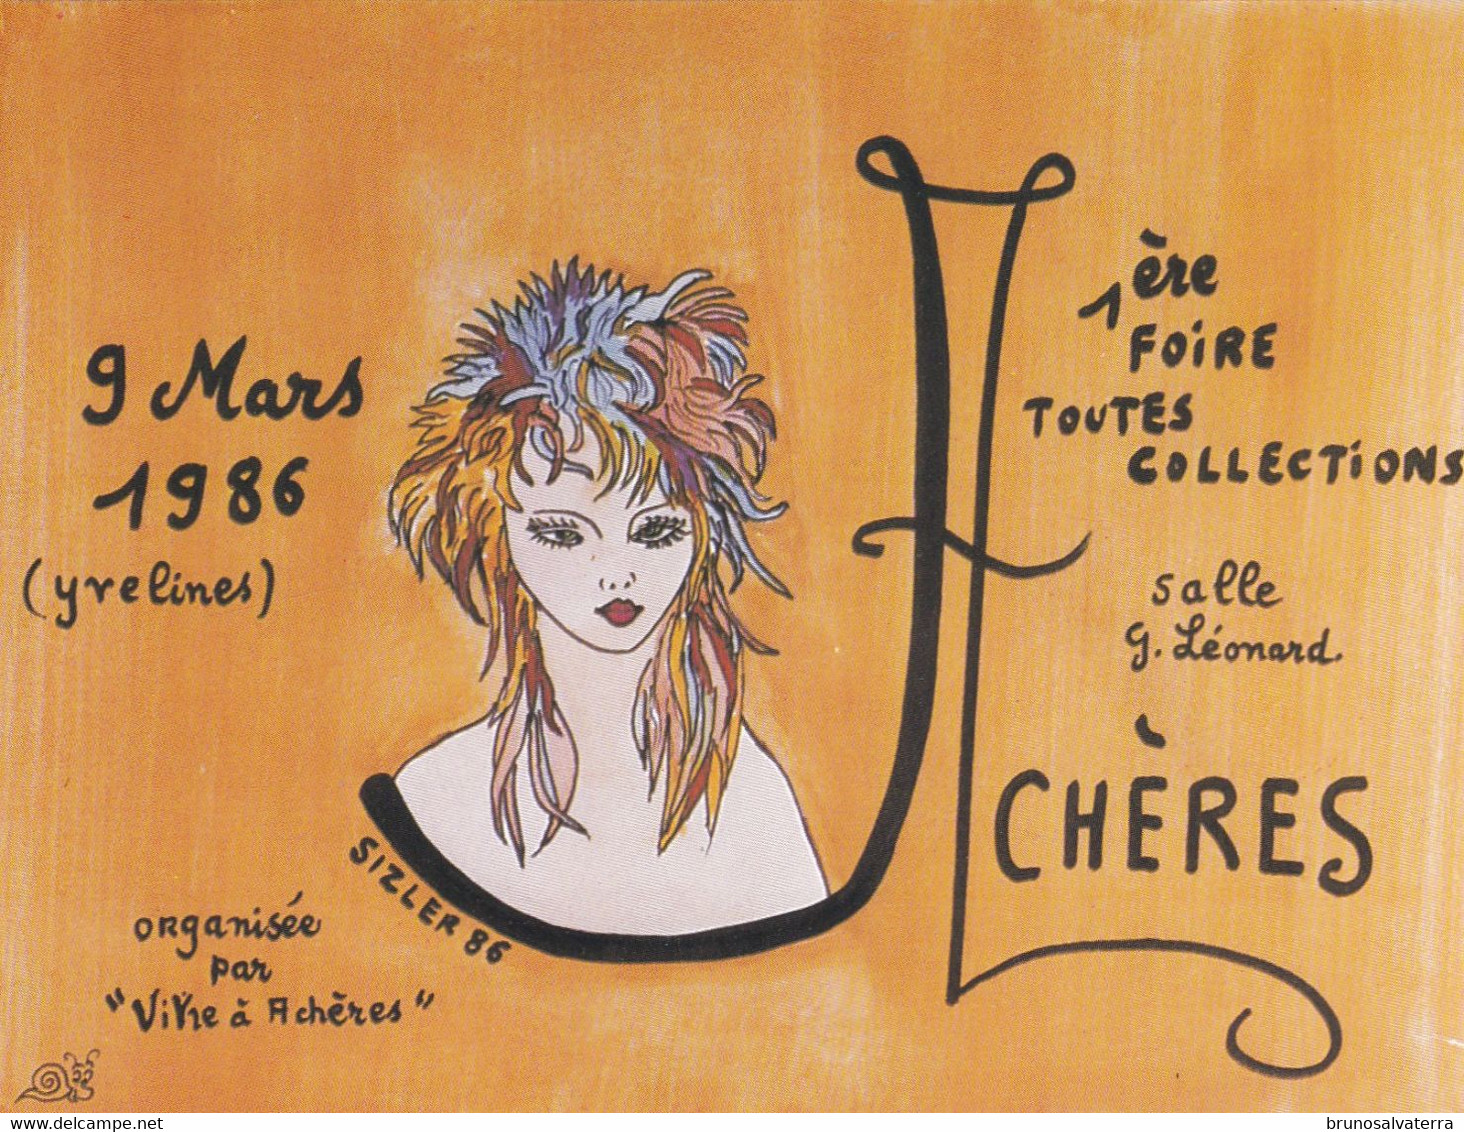 ACHERES - 1° Foire Toutes Collections - 9 Mars 1986 - Bourses & Salons De Collections